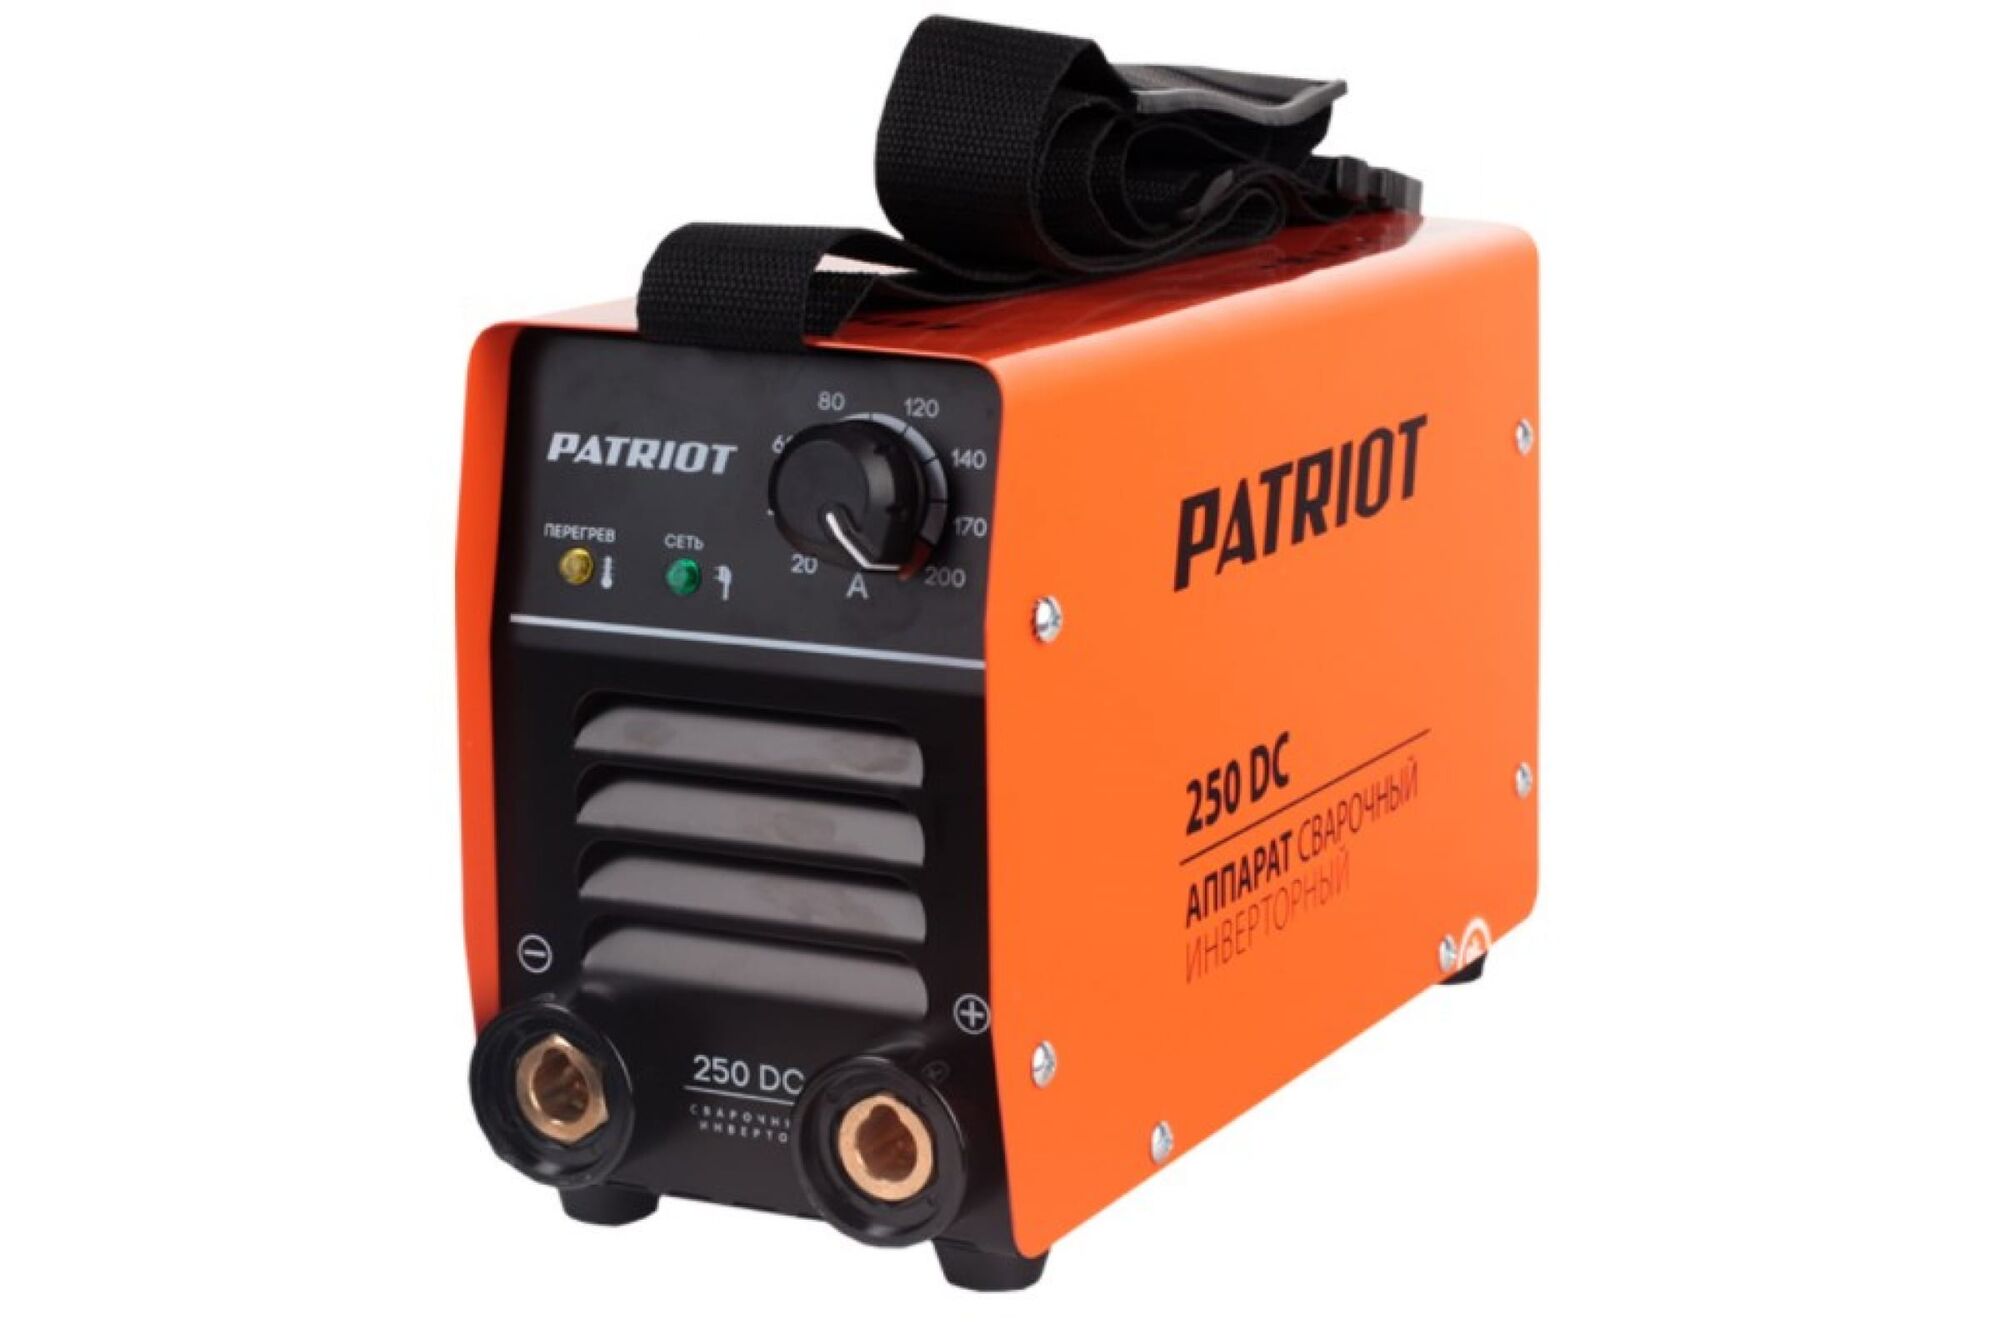 Сварочный аппарат в кейсе PATRIOT 250DC MMA 605302521